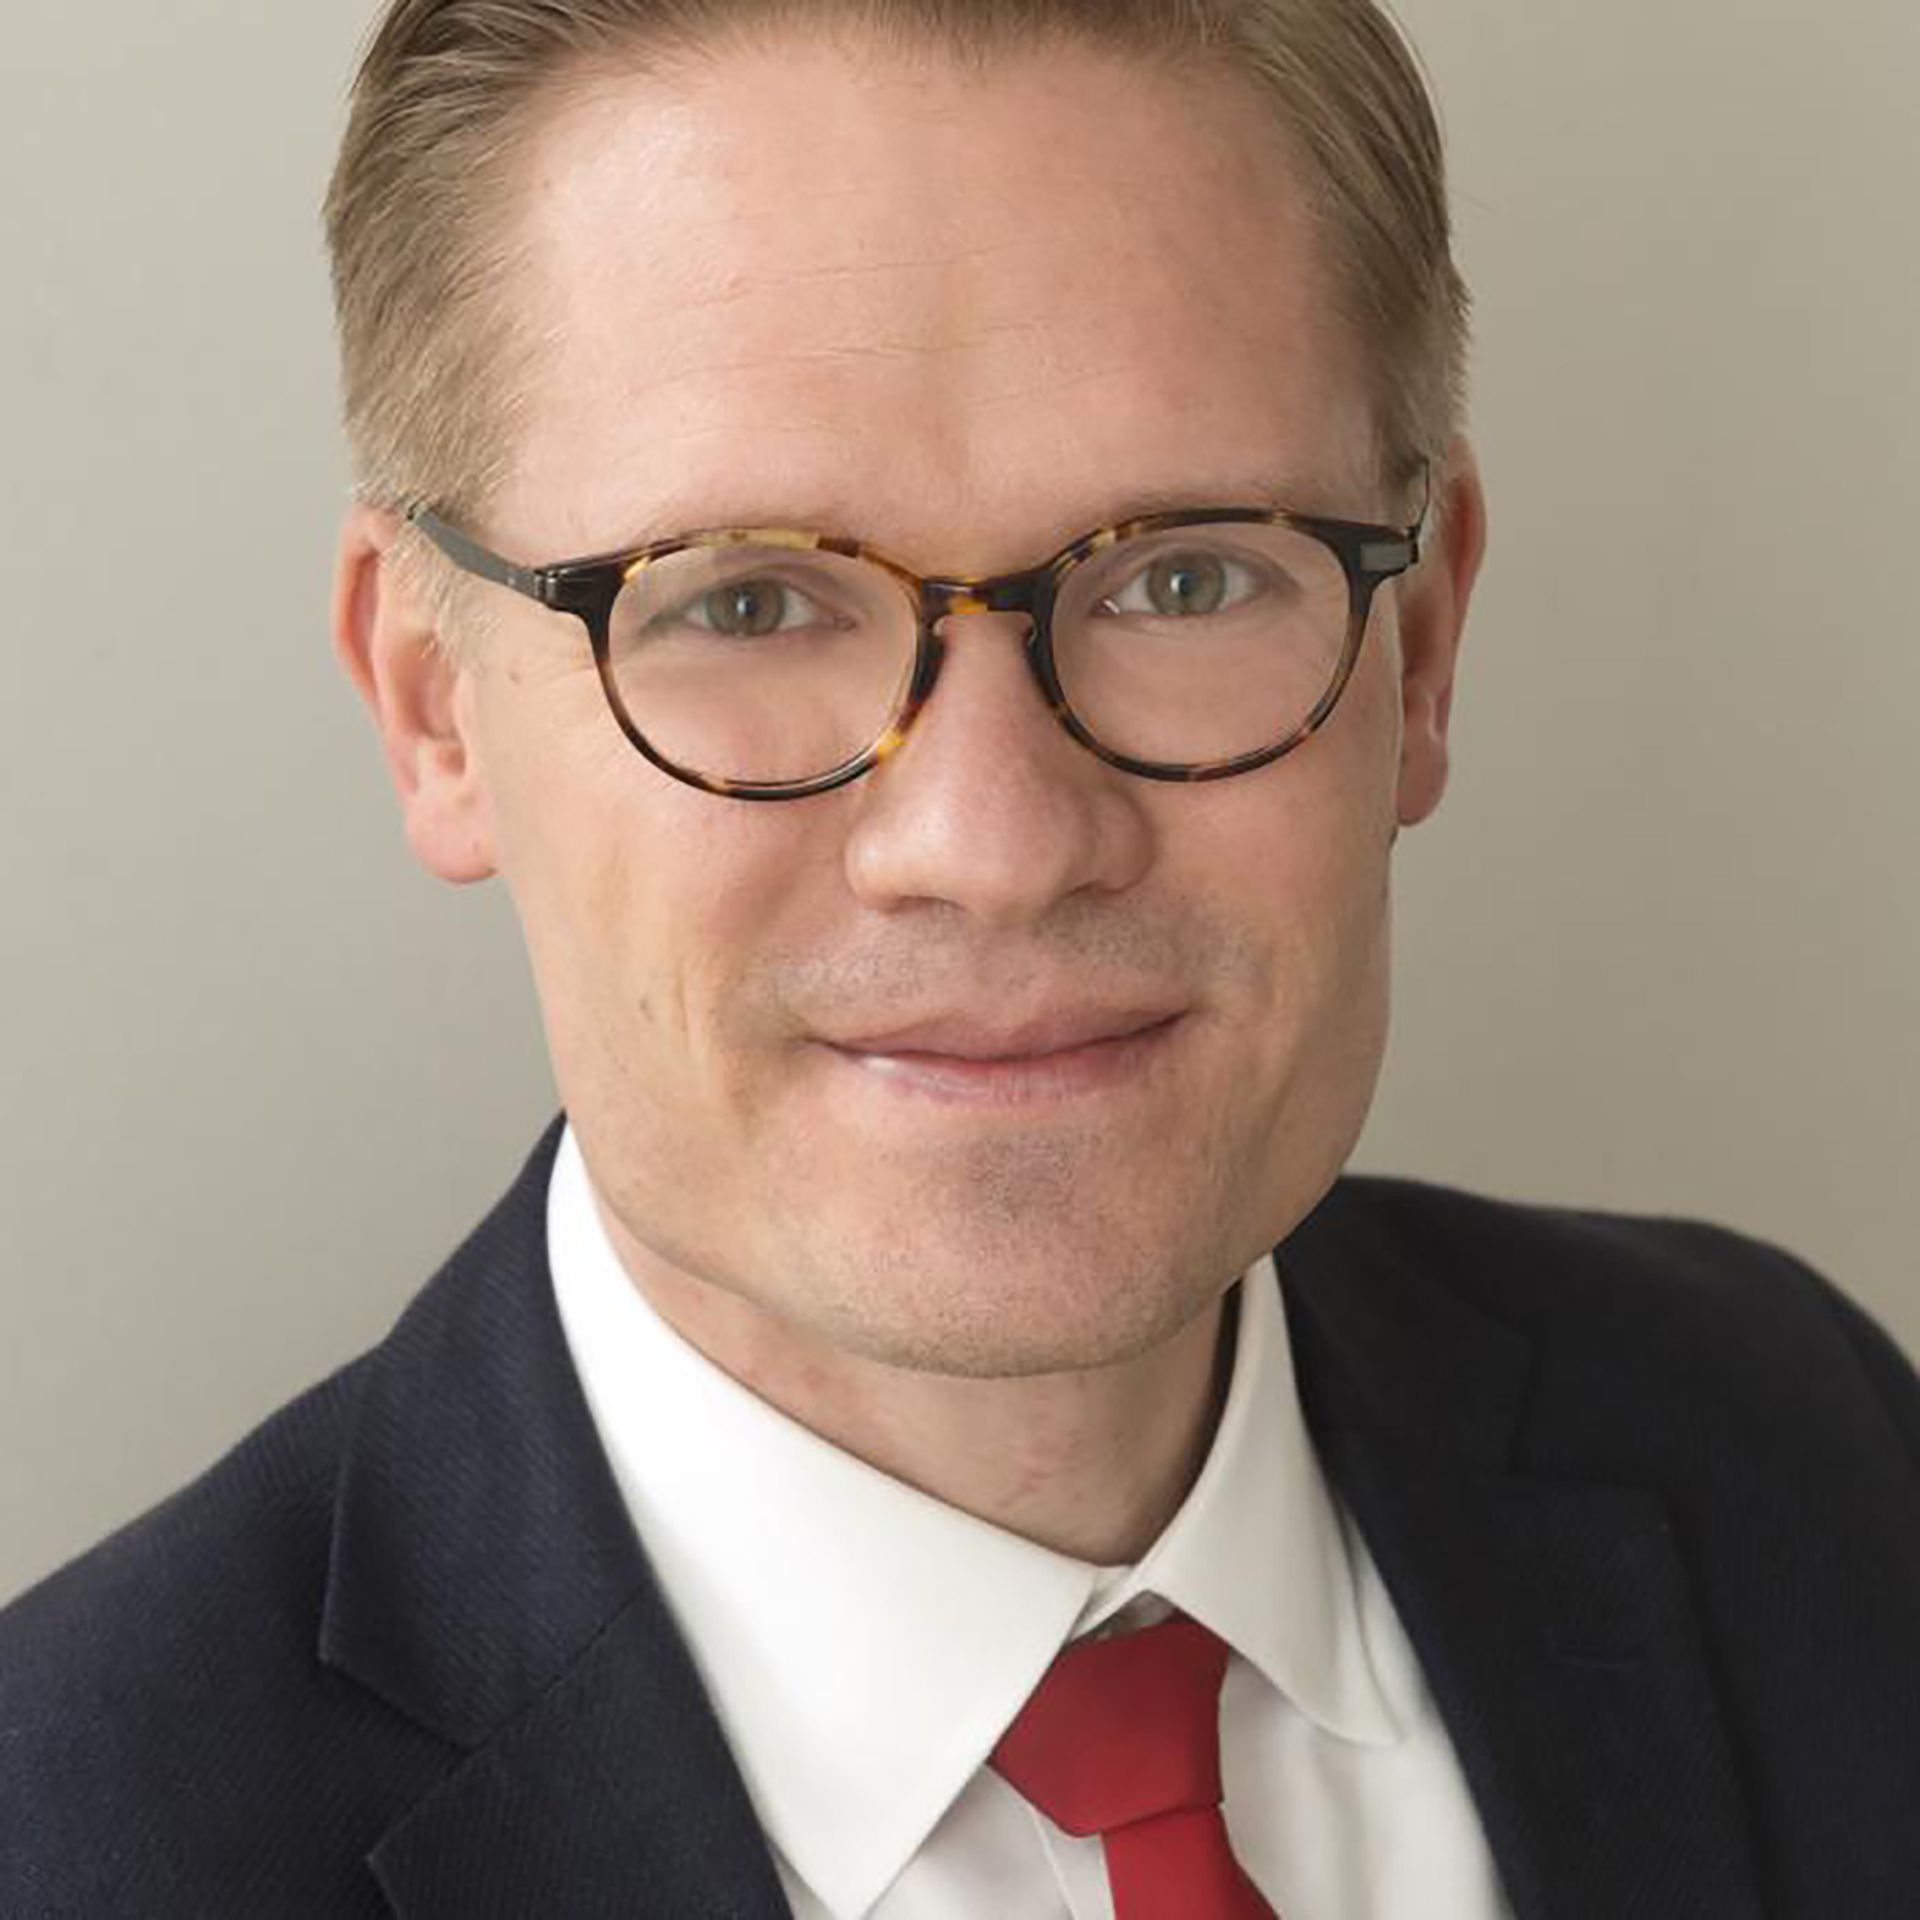 Rasmus Kleis Nielsen, profesor de comunicación política y director del Reuters Institute for the Study of Journalism en la Universidad de Oxford